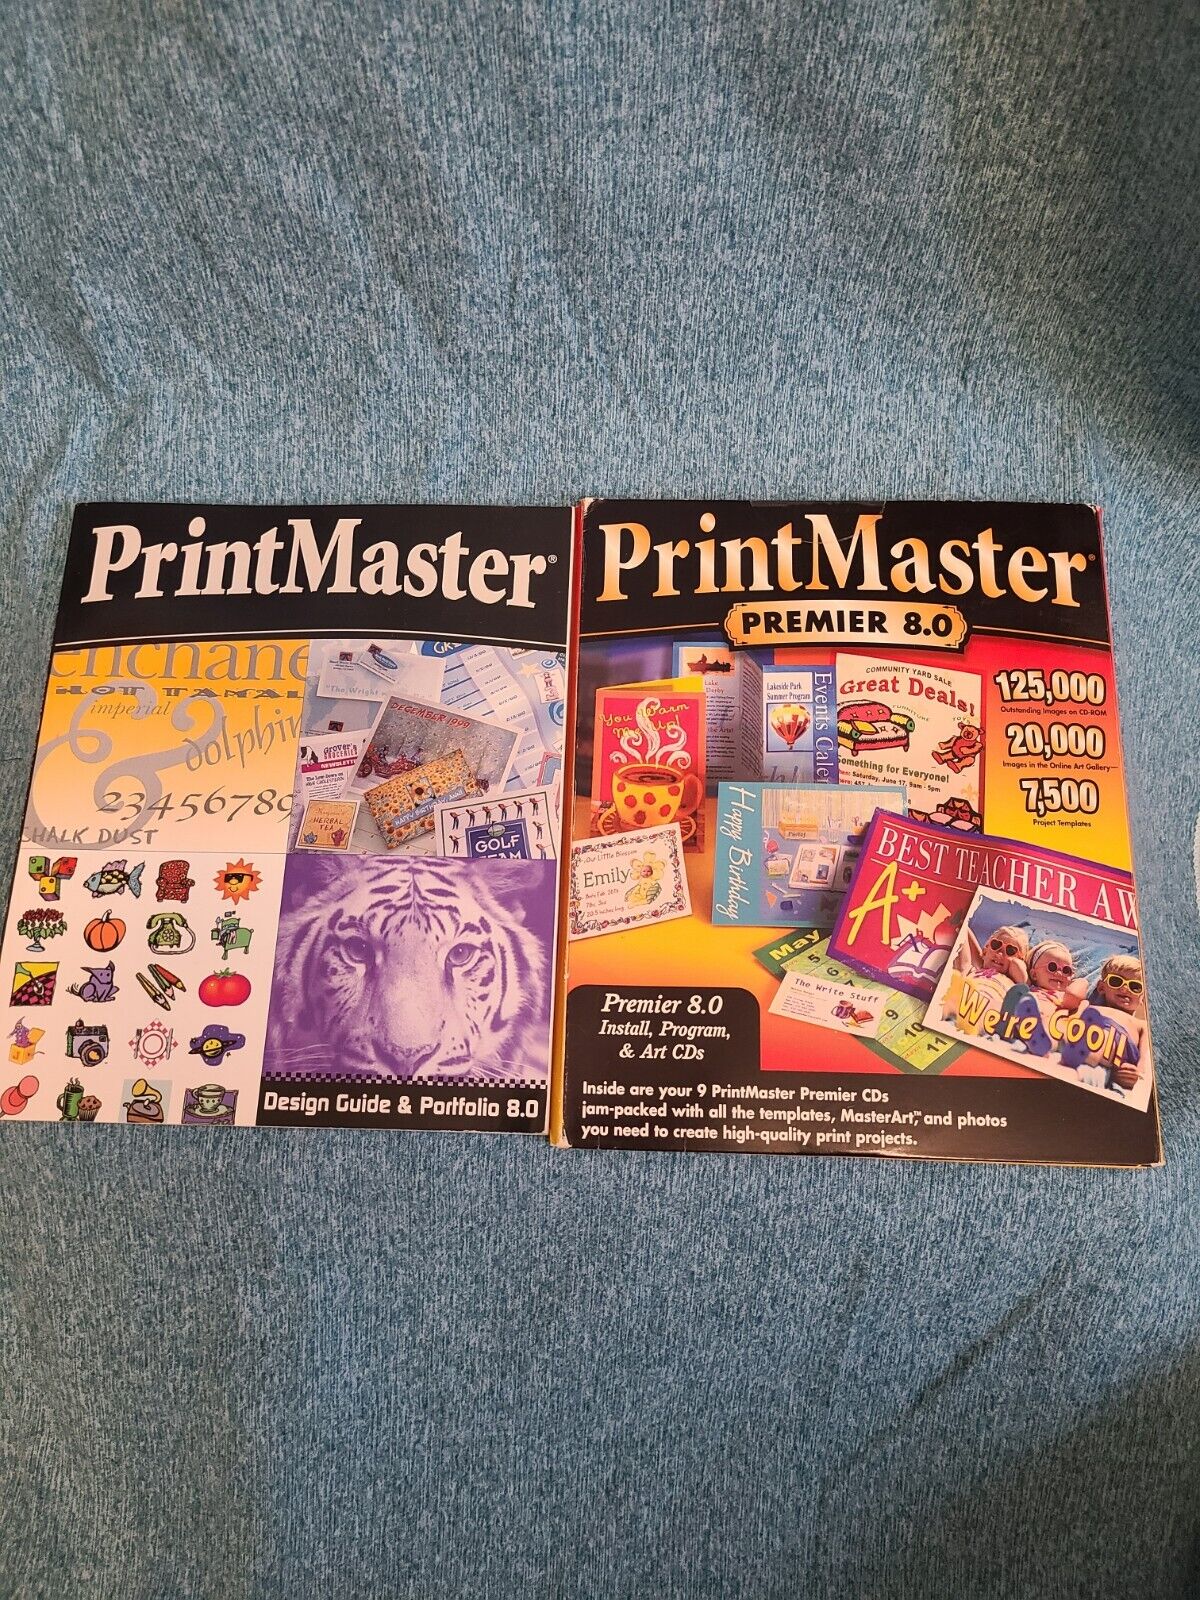 Print Master Premier 8.0 clip art discs 